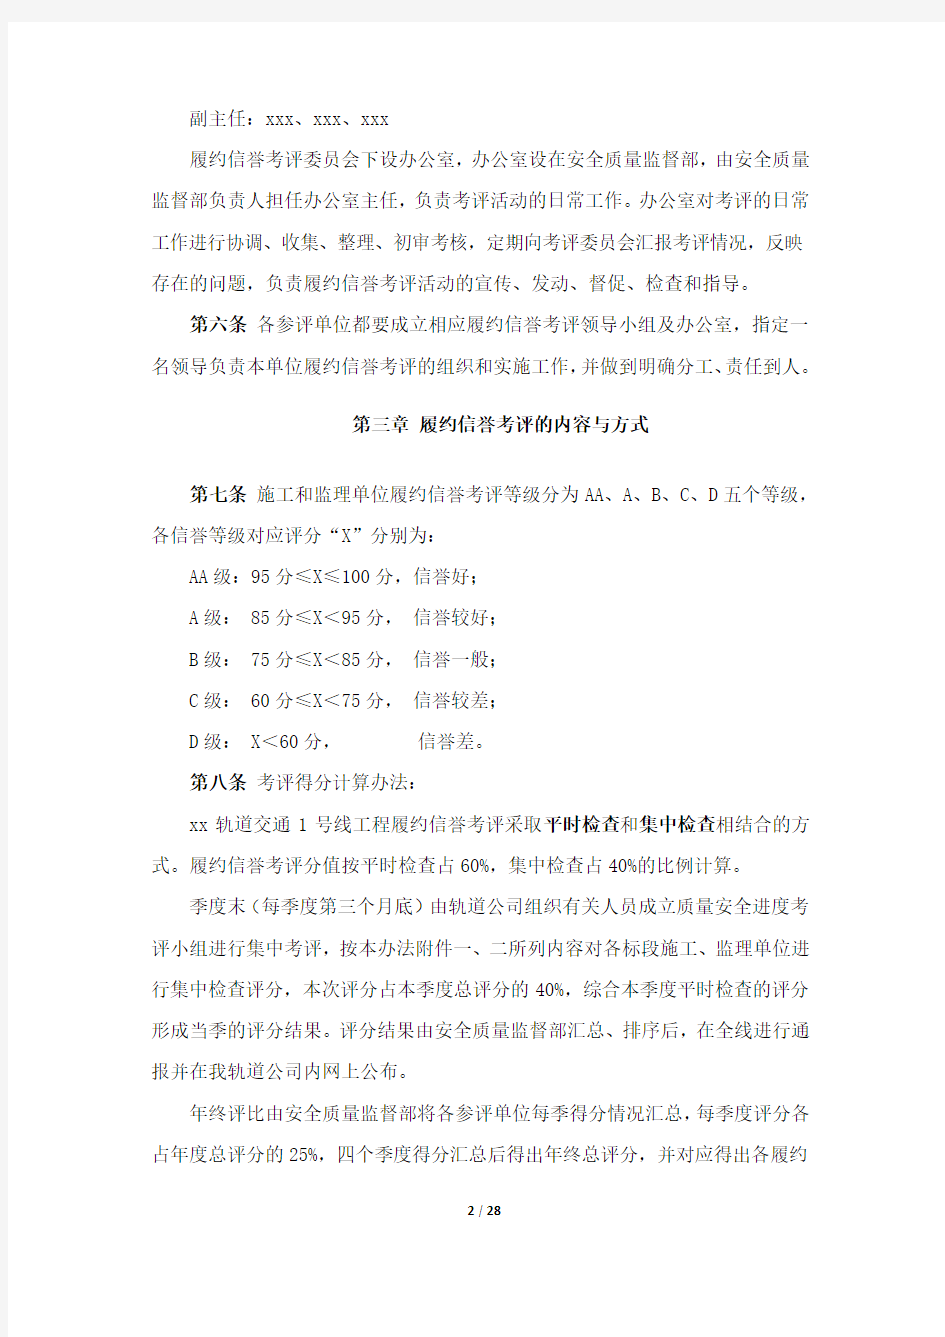 履约信誉考评管理办法(试行)2013.1.30